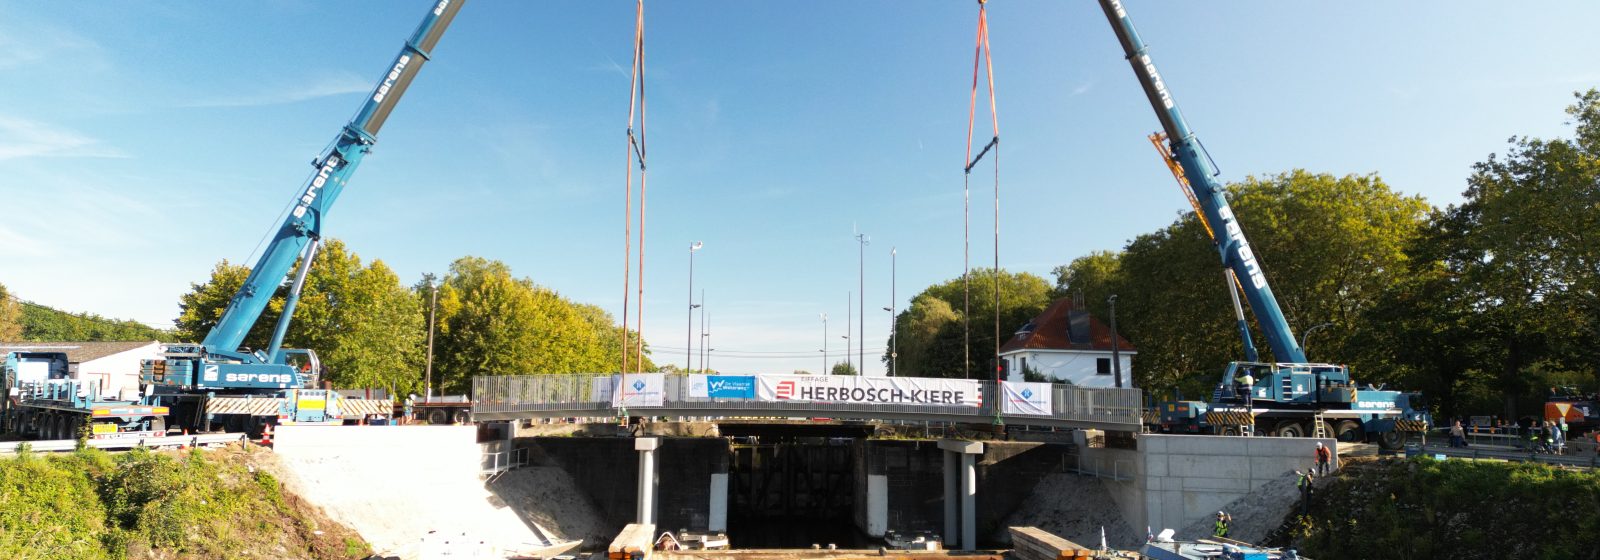 Installatie van de fietsbrug over het kanaal Dessel-Turnhout-Schoten